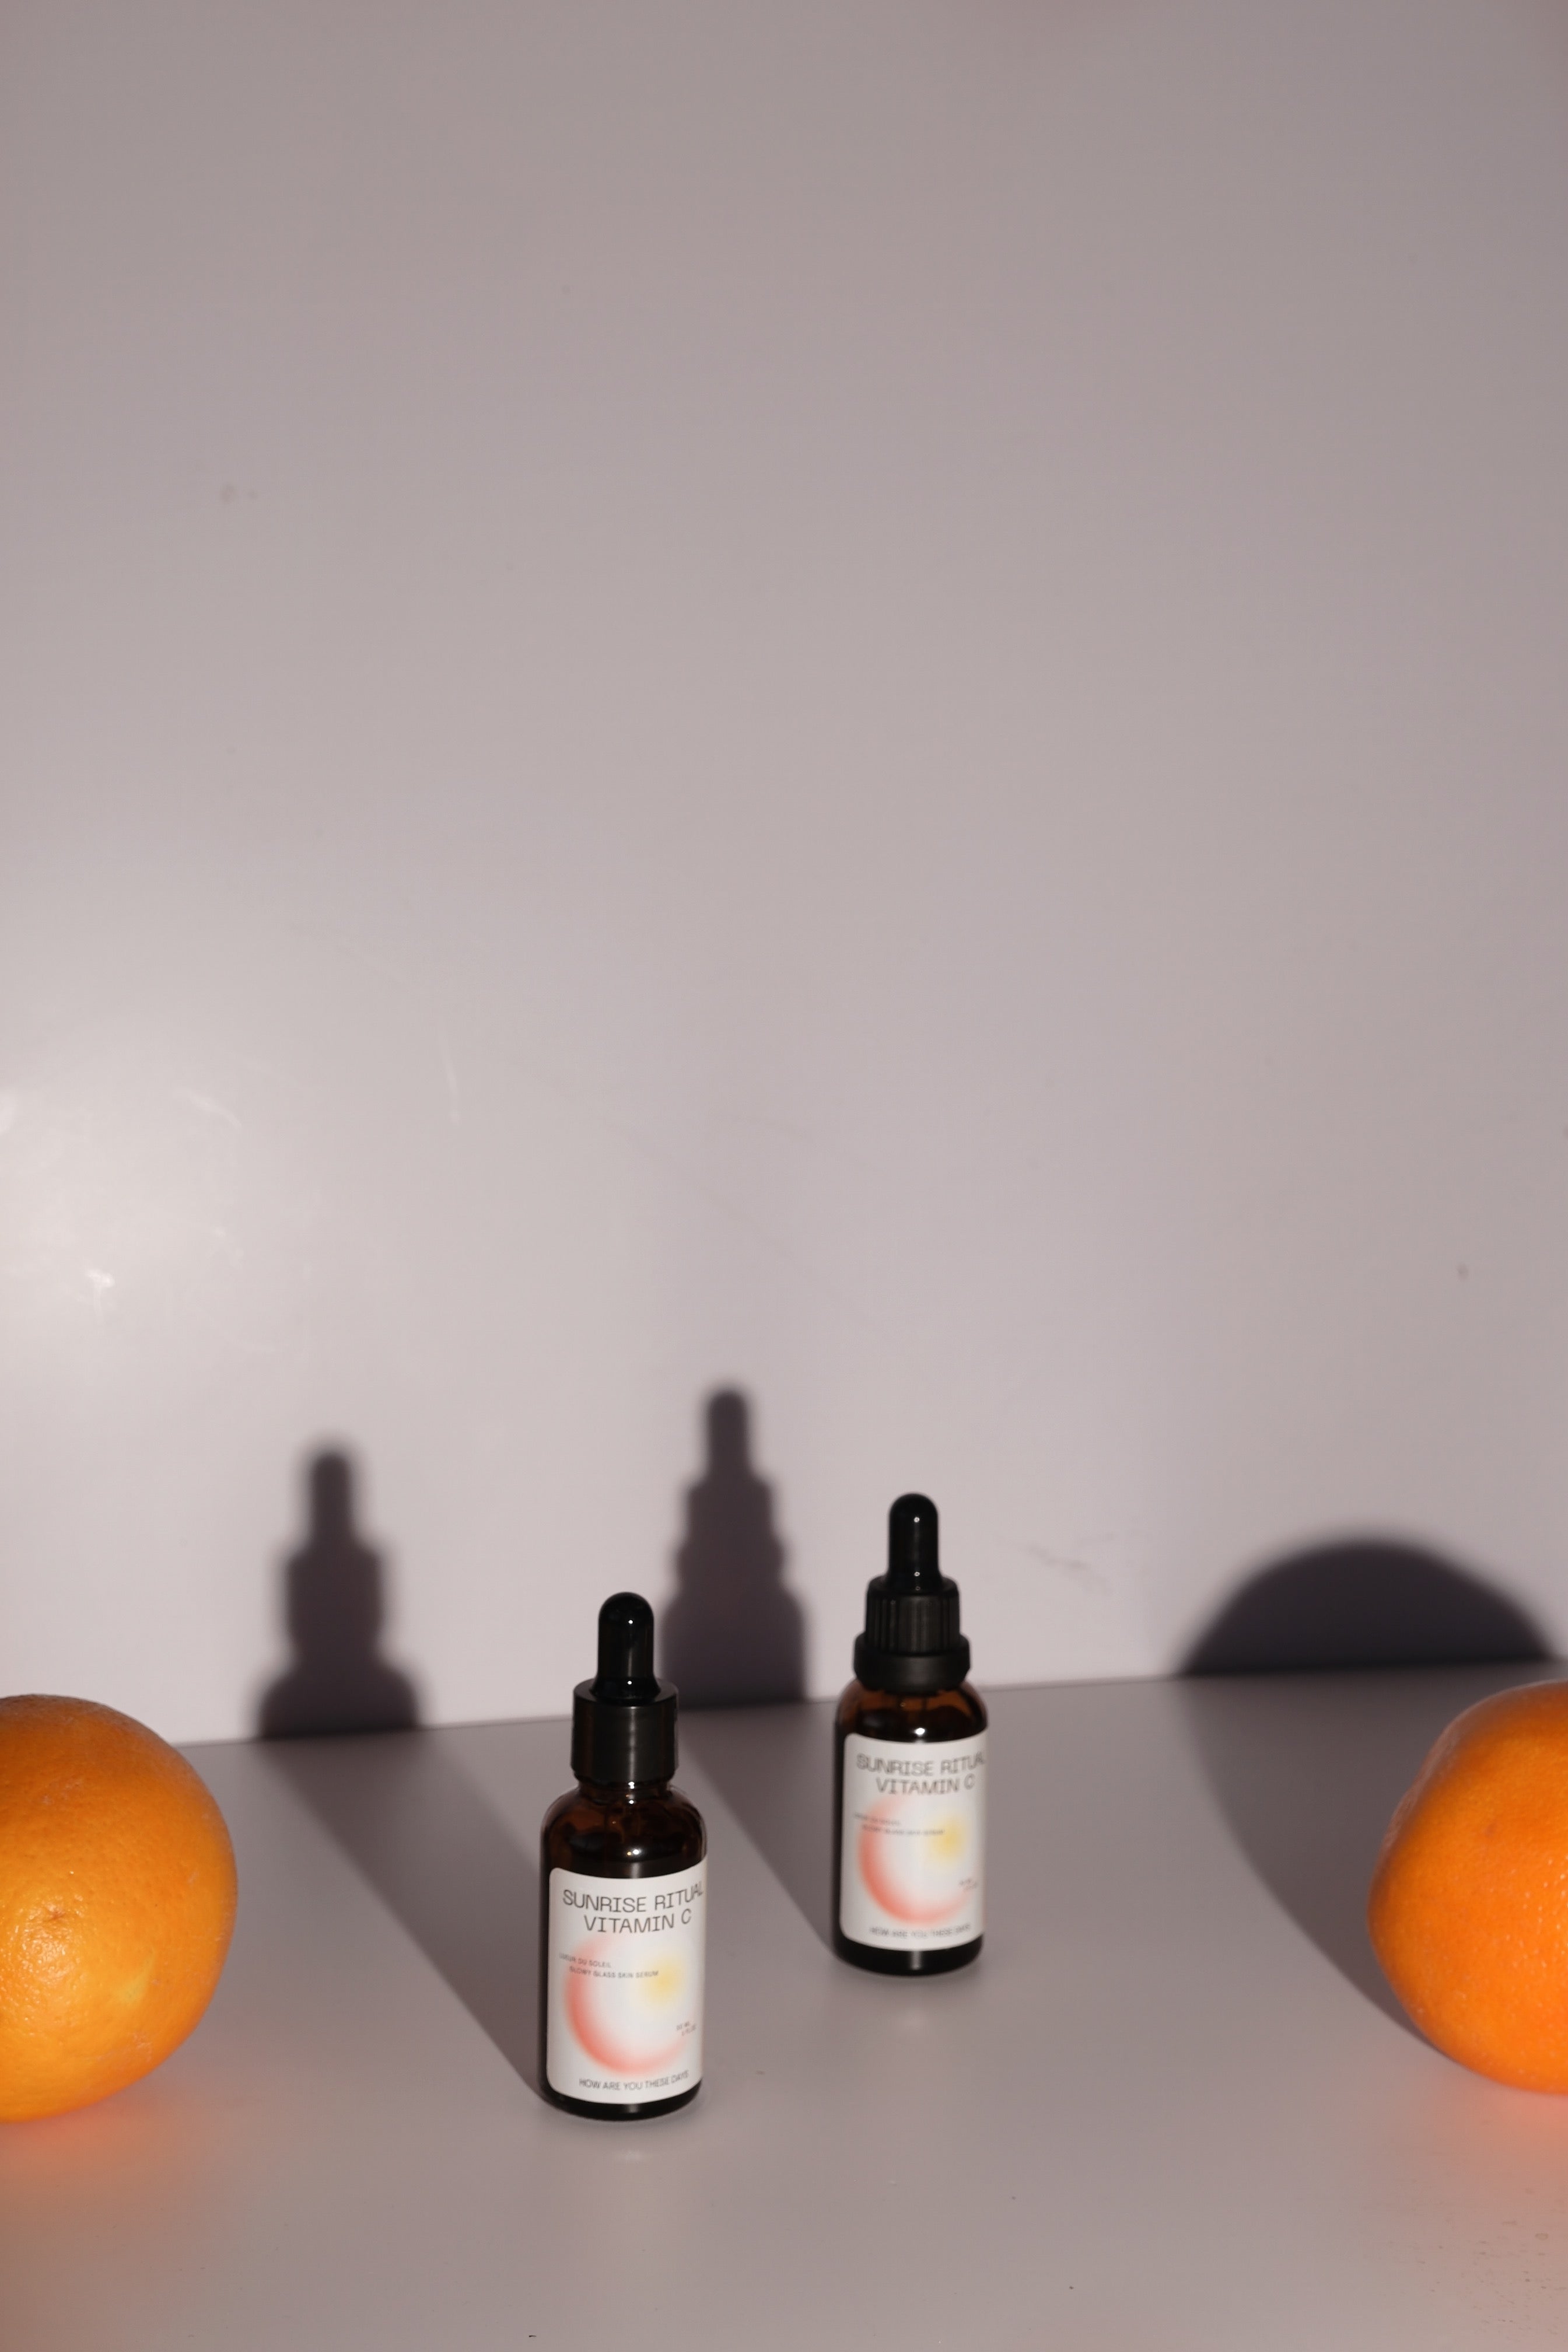 HAYTD Sunrise Ritual Vitamin C | Glowy Glass Skin Serum